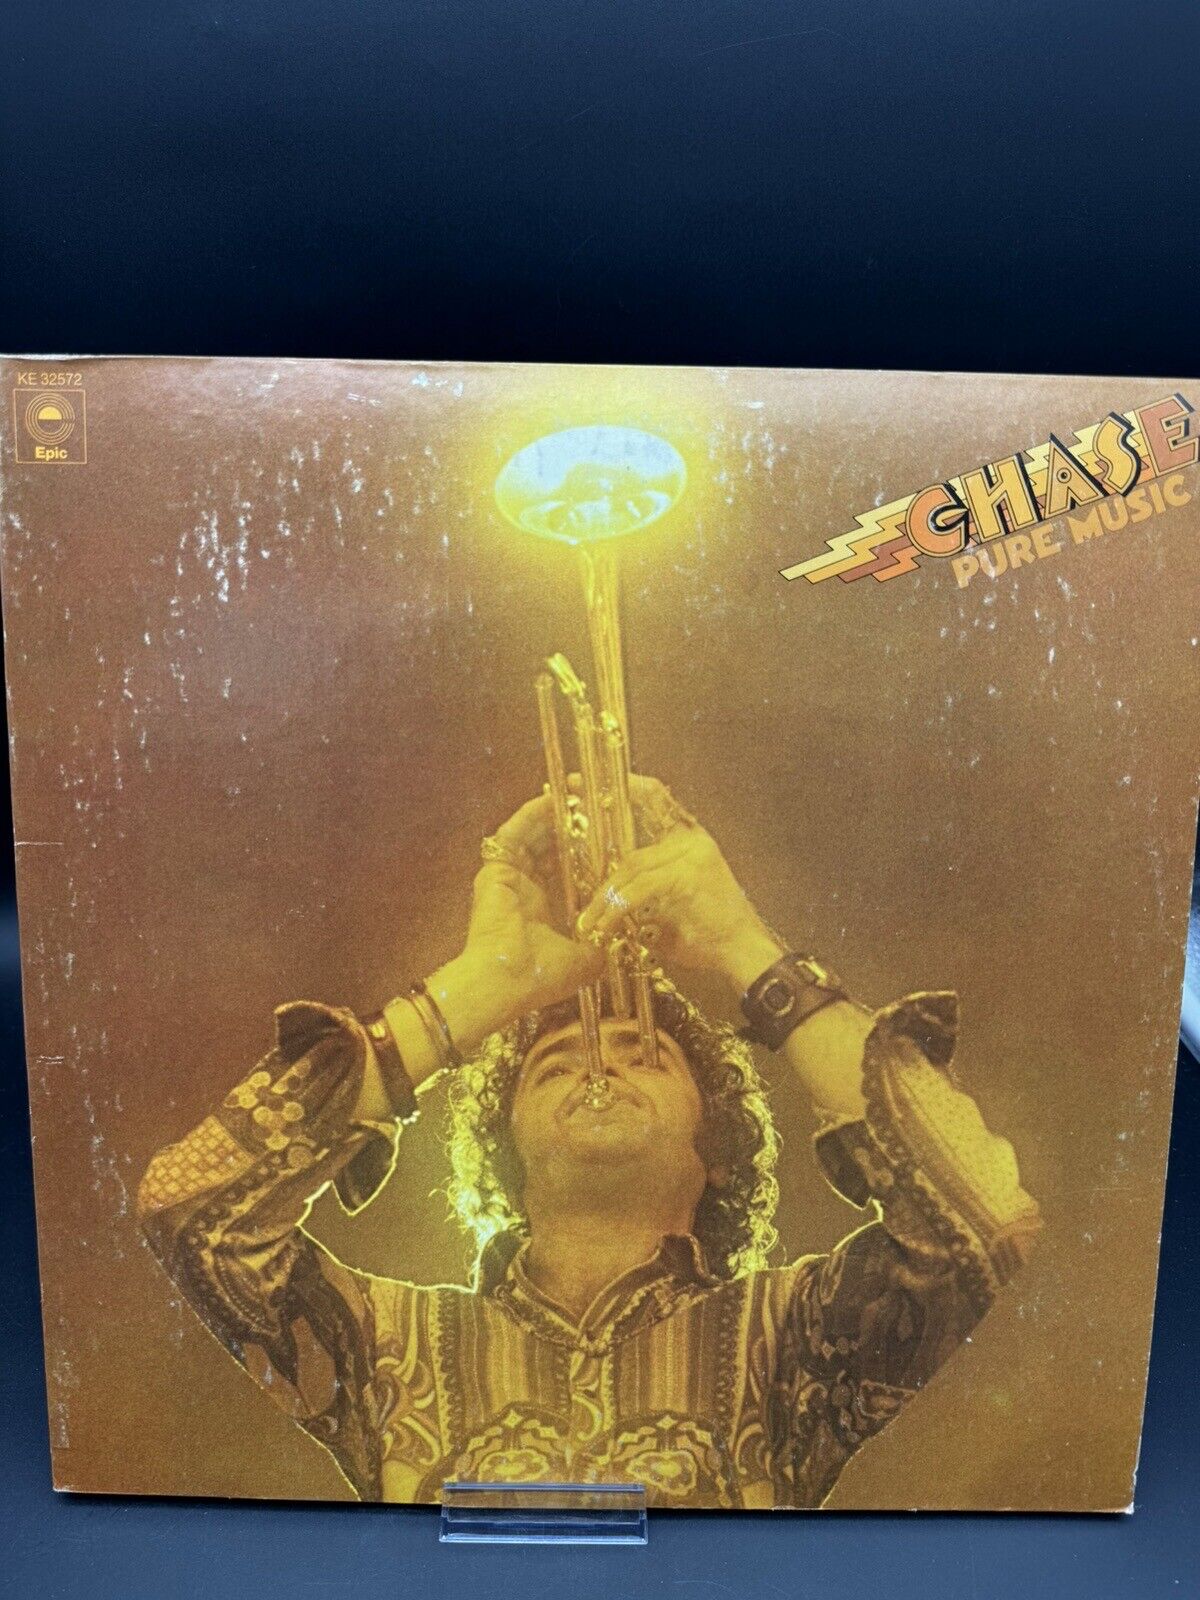 Chase Pure Music LP Quad Vintage Vinyl 1974 Epic EQ 32572 Jazz Rock Excellent